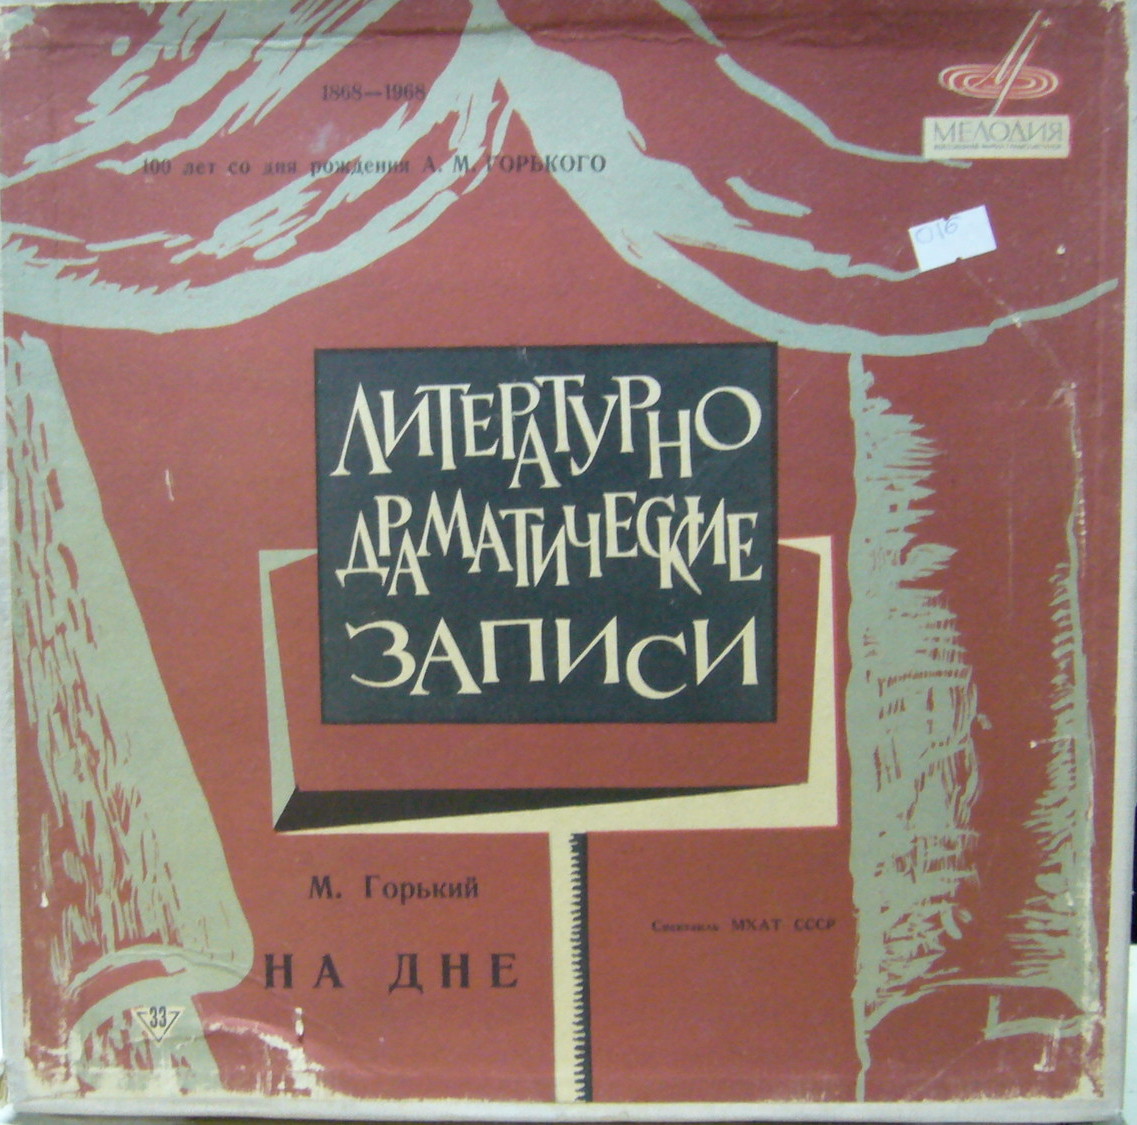 М. ГОРЬКИЙ (1868–1936): «На дне», спектакль (МХАТ СССР)